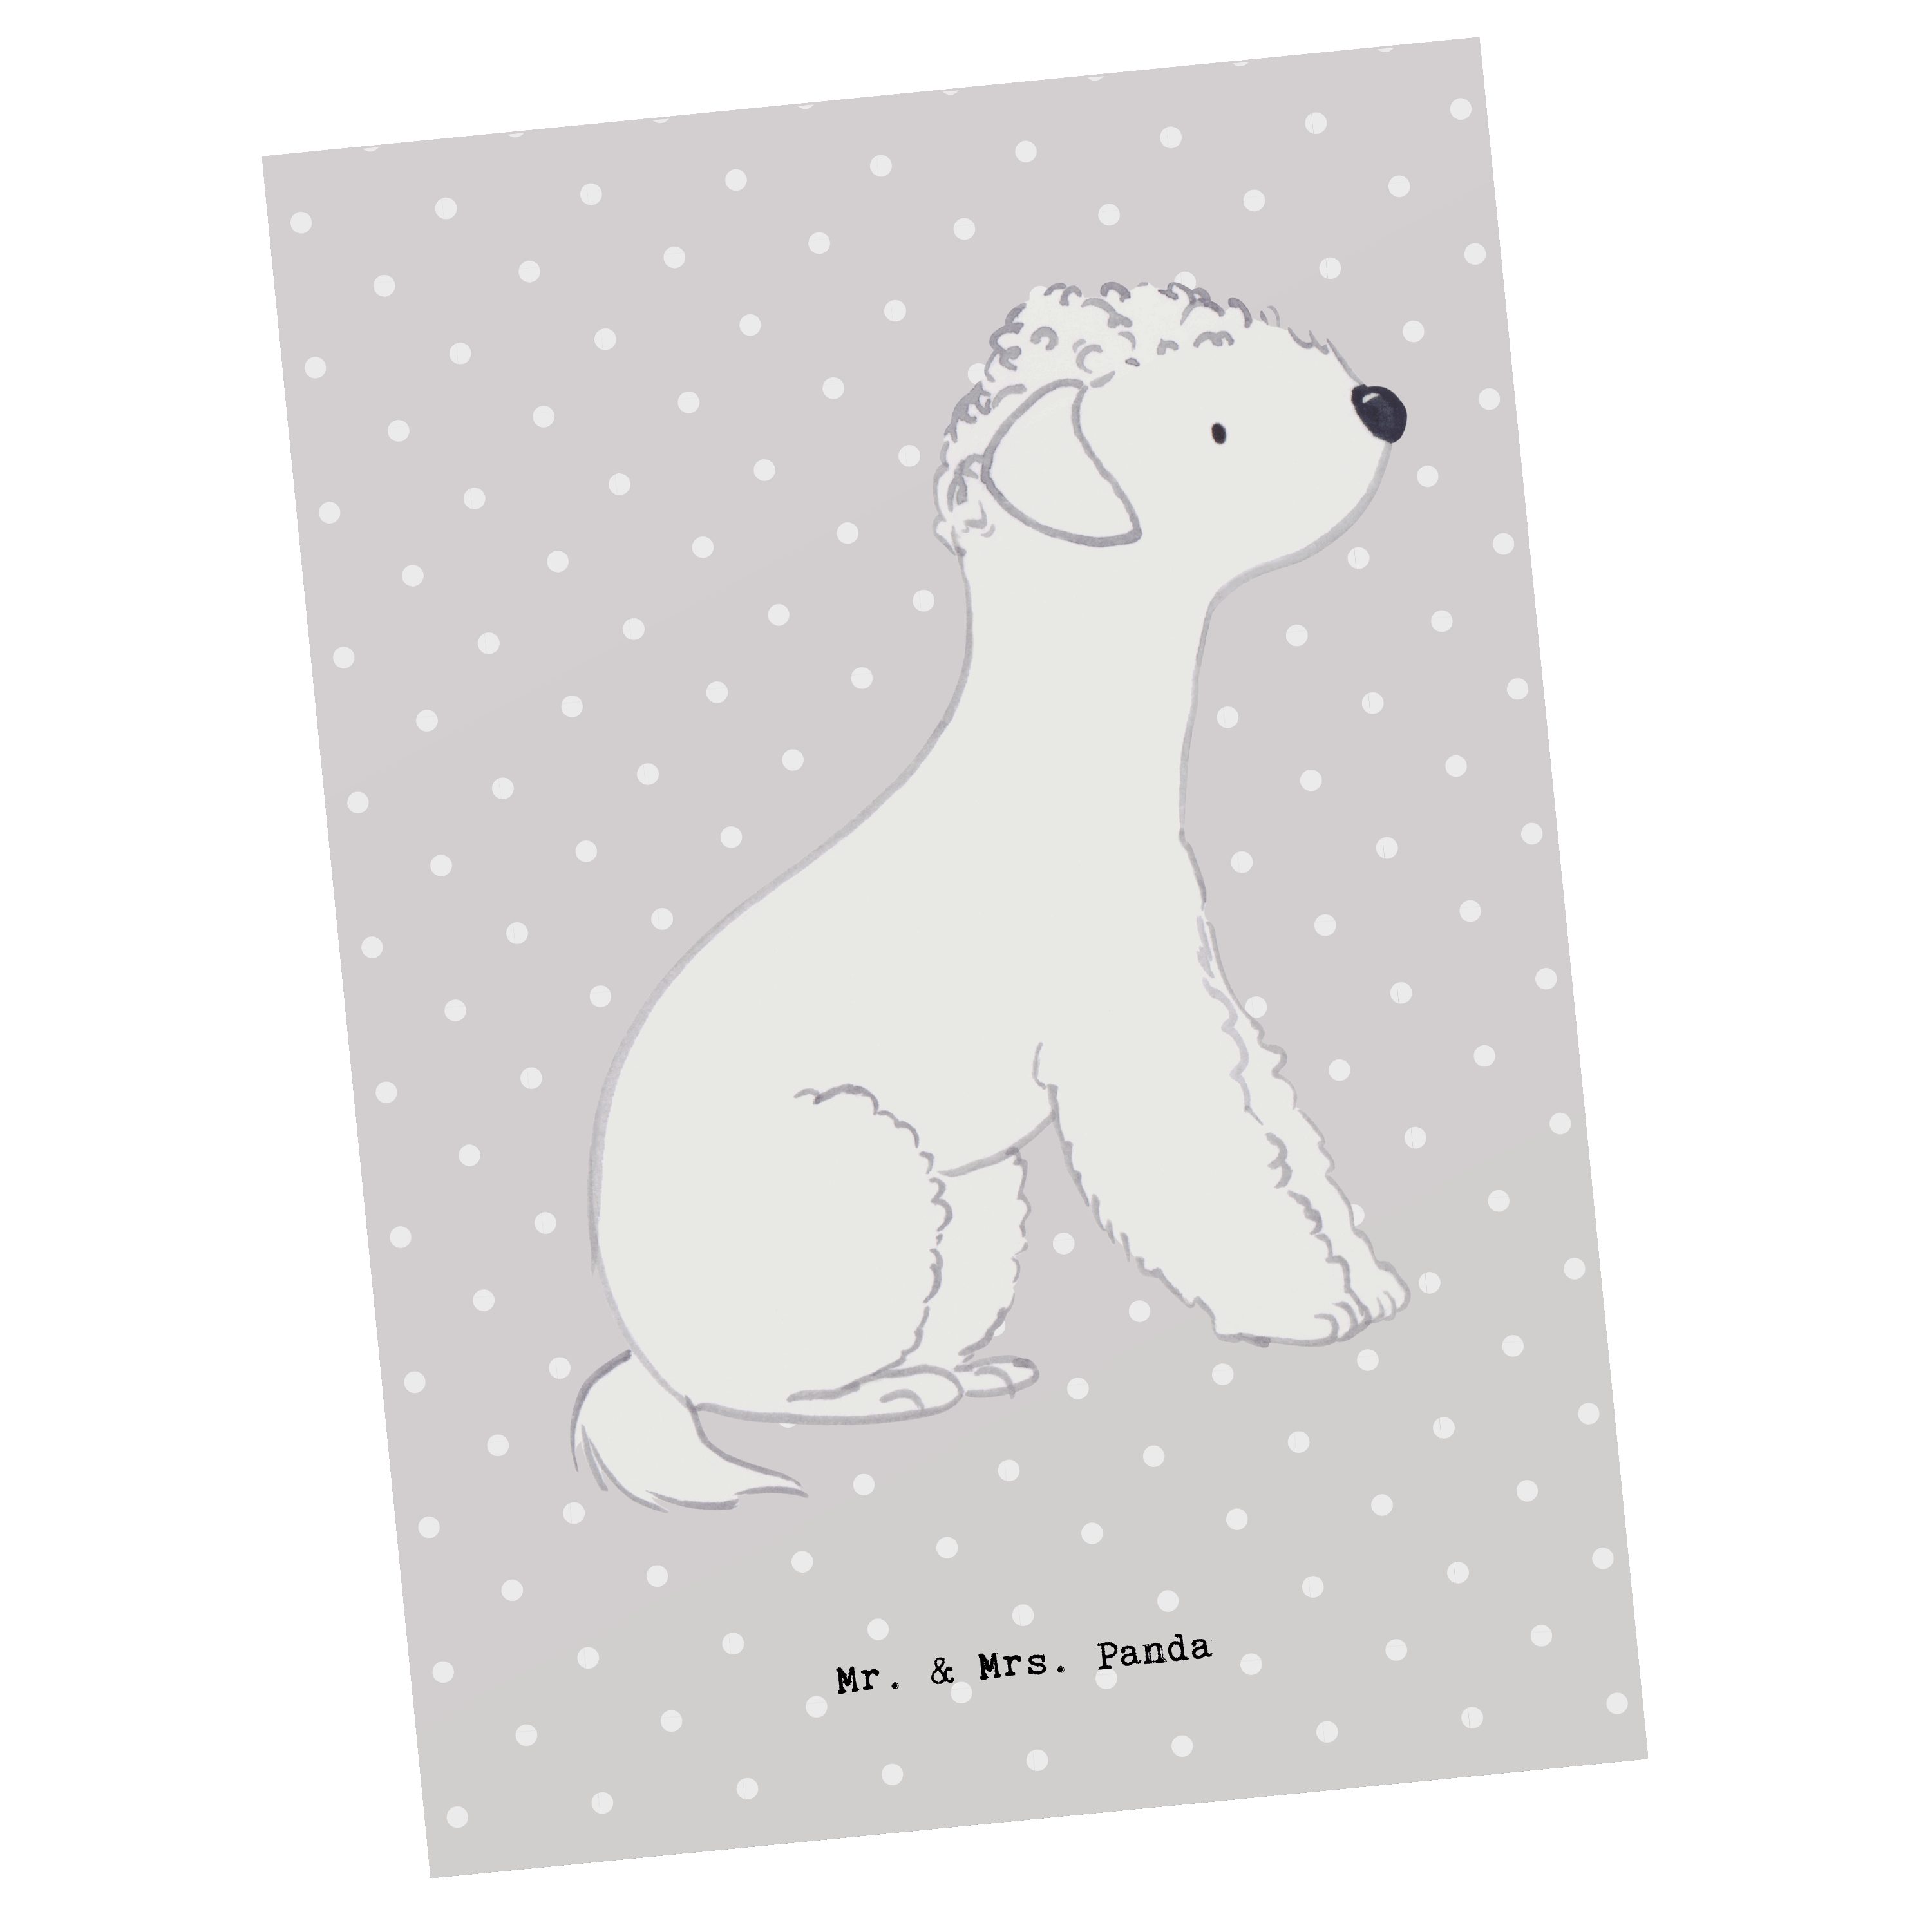 Mr. & Mrs. Panda Postkarte Bedlington Terrier Lebensretter - Grau Pastell - Geschenk, Grußkarte